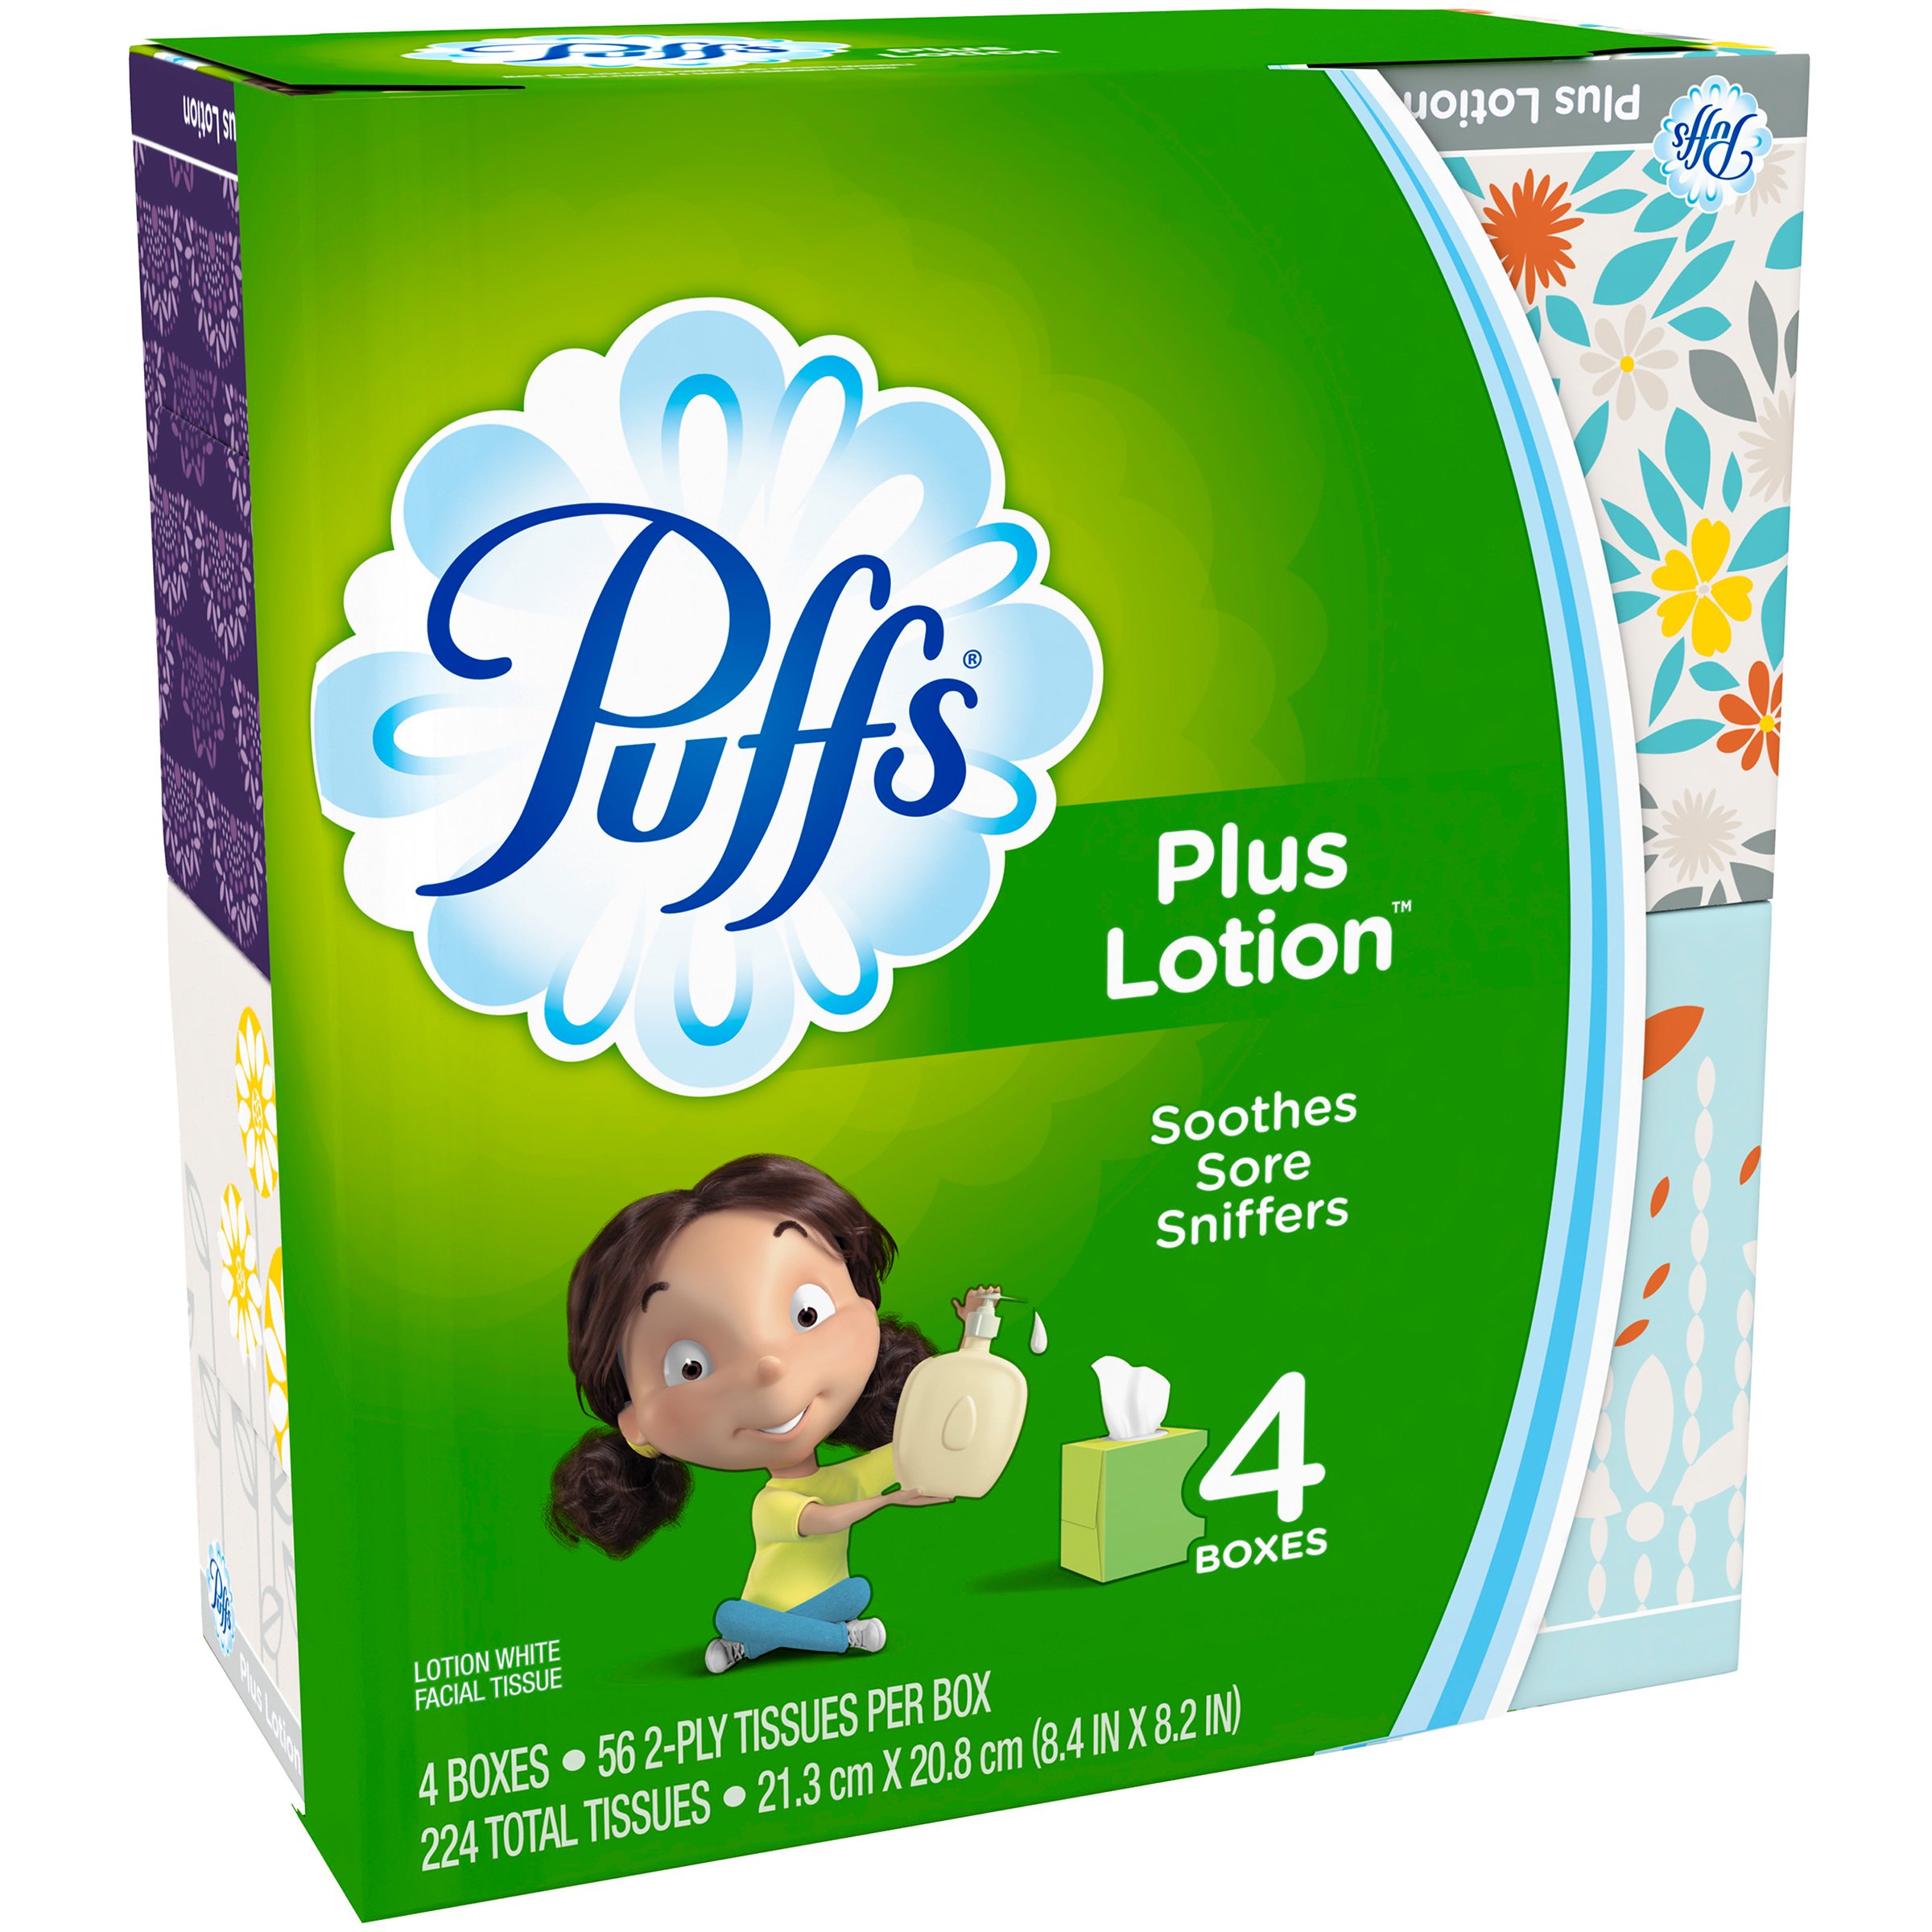 Puffs Plus Lotion Facial Tissues 4 pk - Shop Facial Tissue at H-E-B